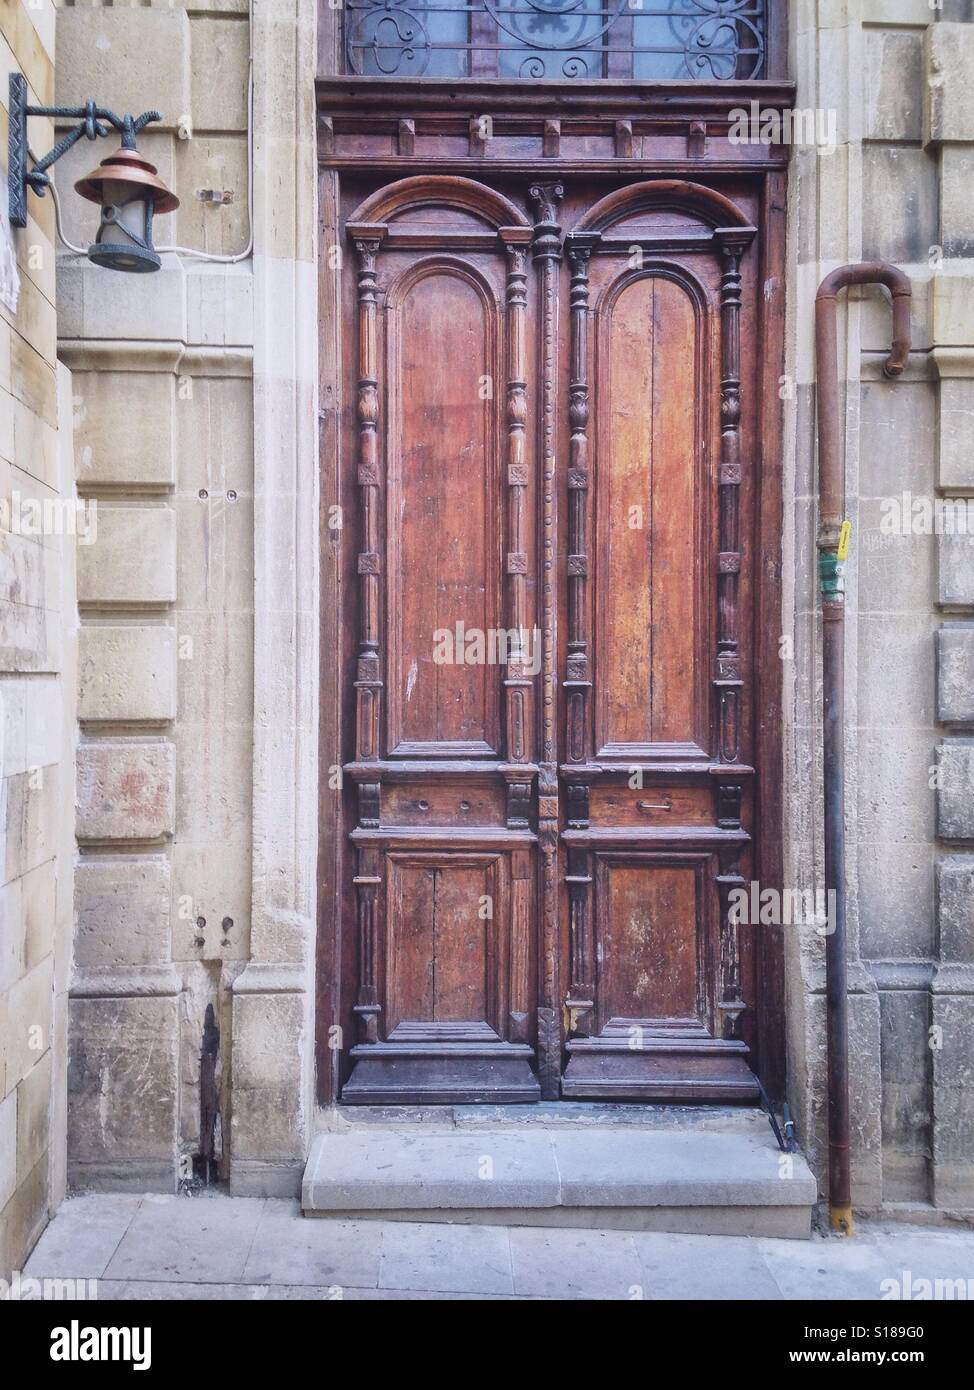 Wooden door in an old city Baku, Azerbajan Stock Photo